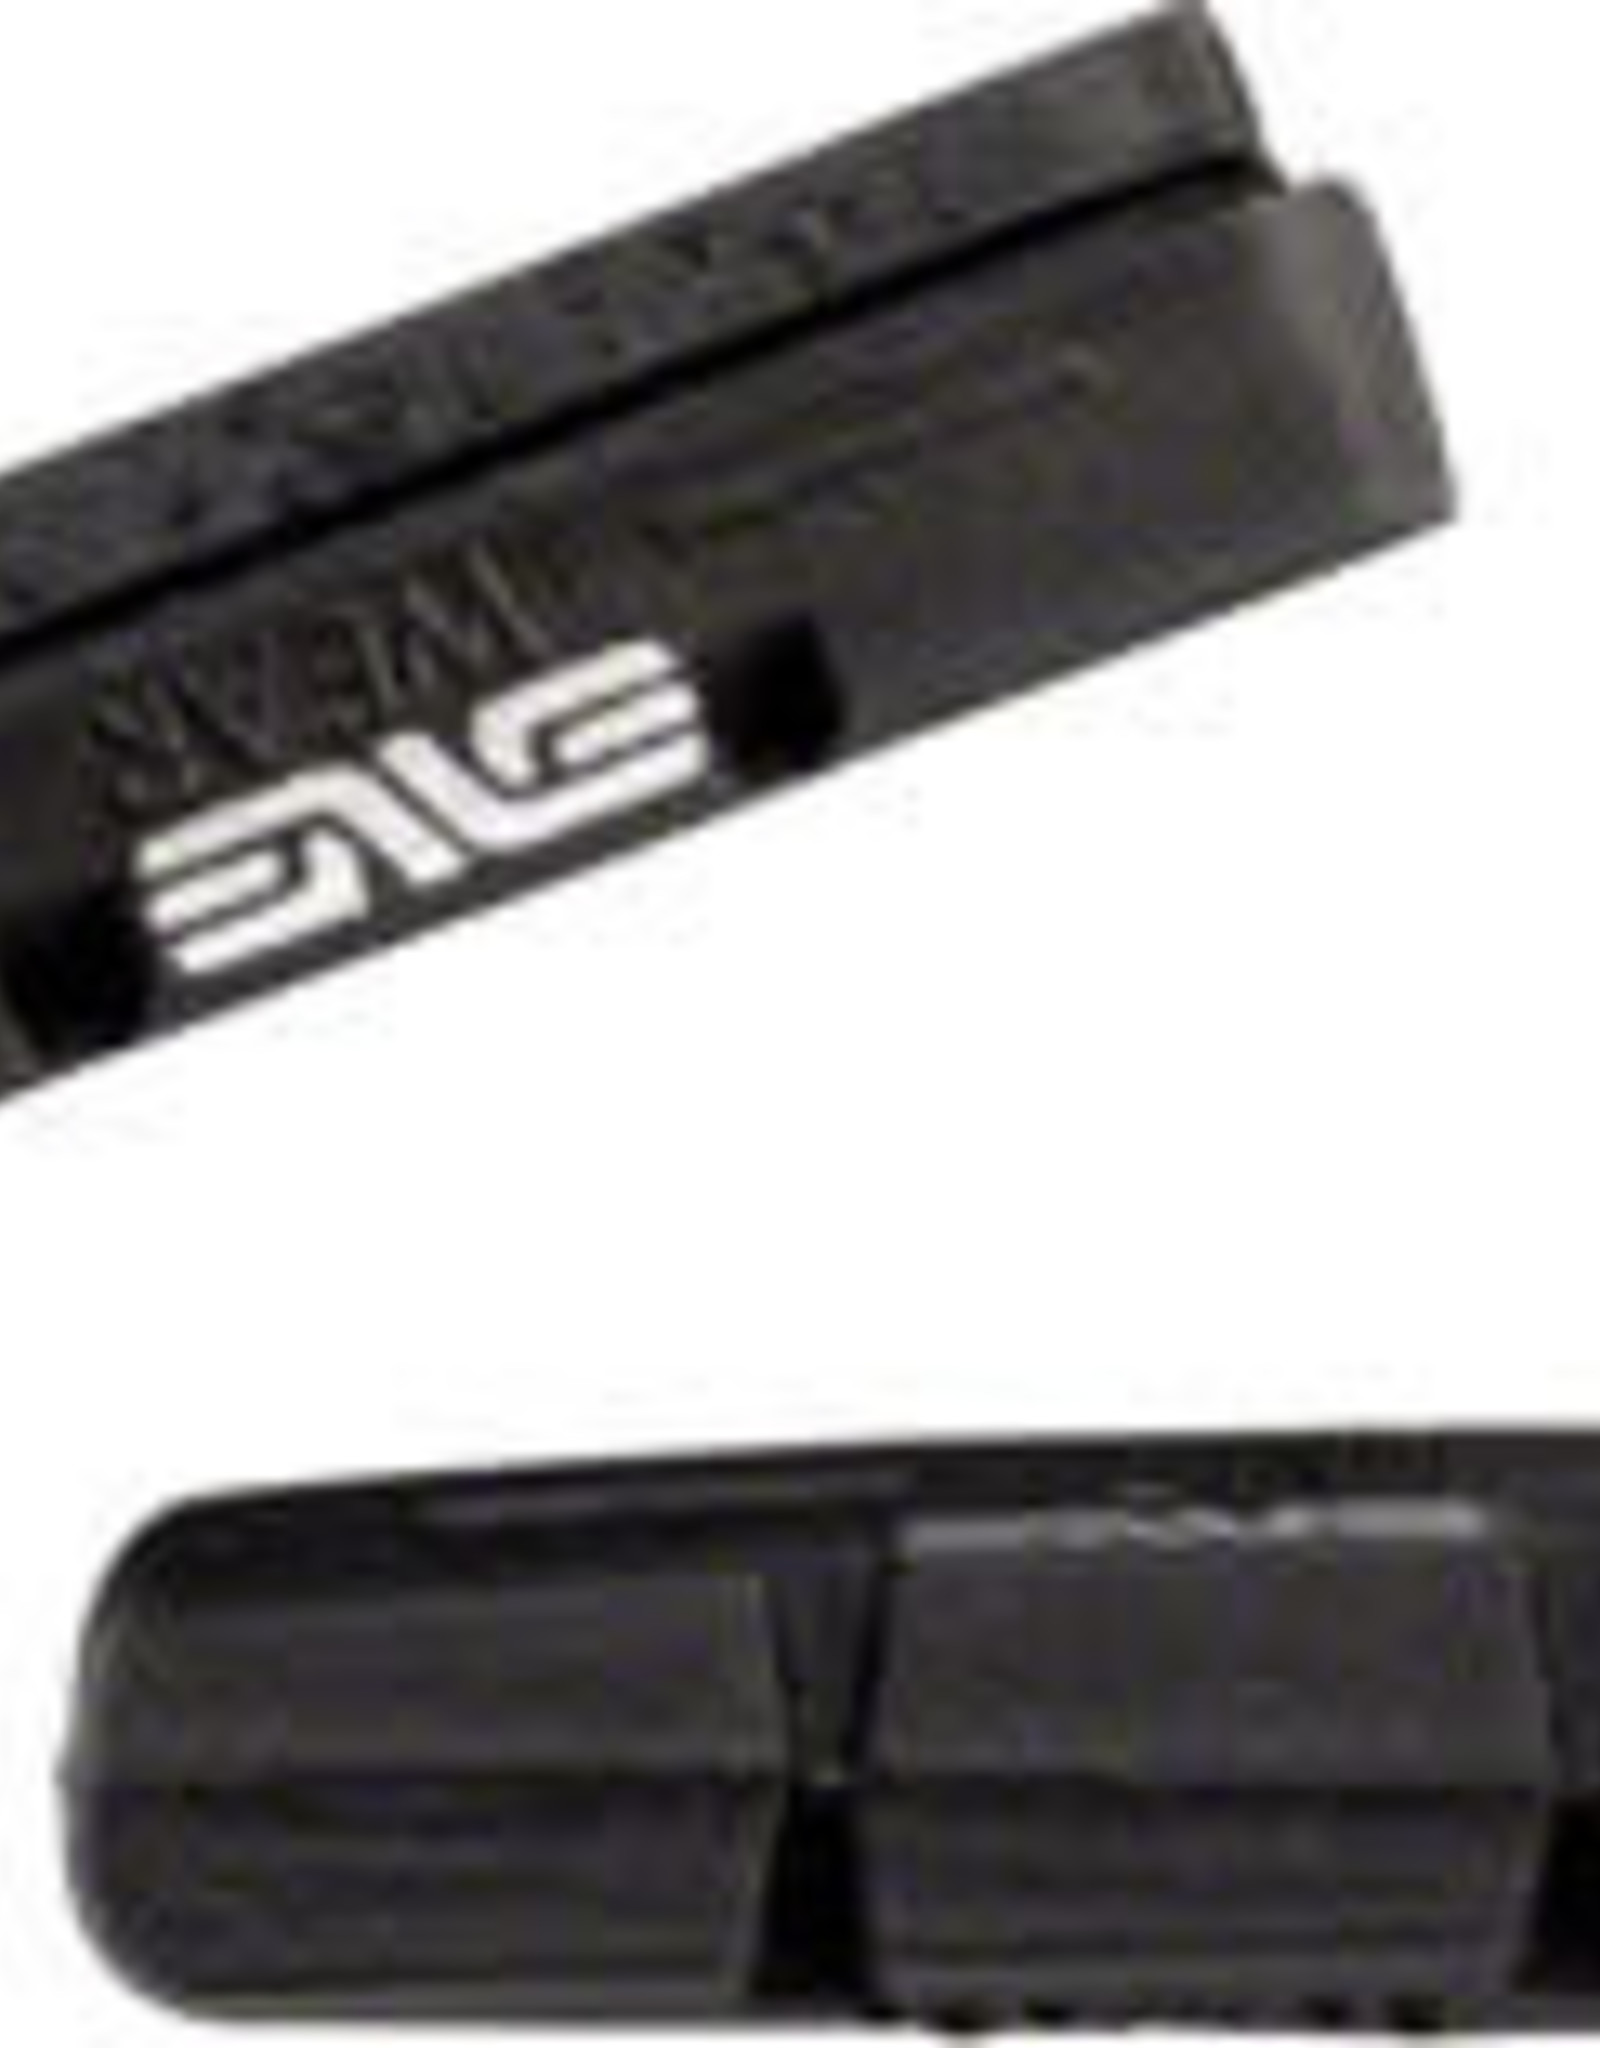 ENVE Composites ENVE Composites Brake Pads for Textured Brake Tracks, Shimano Pair Black